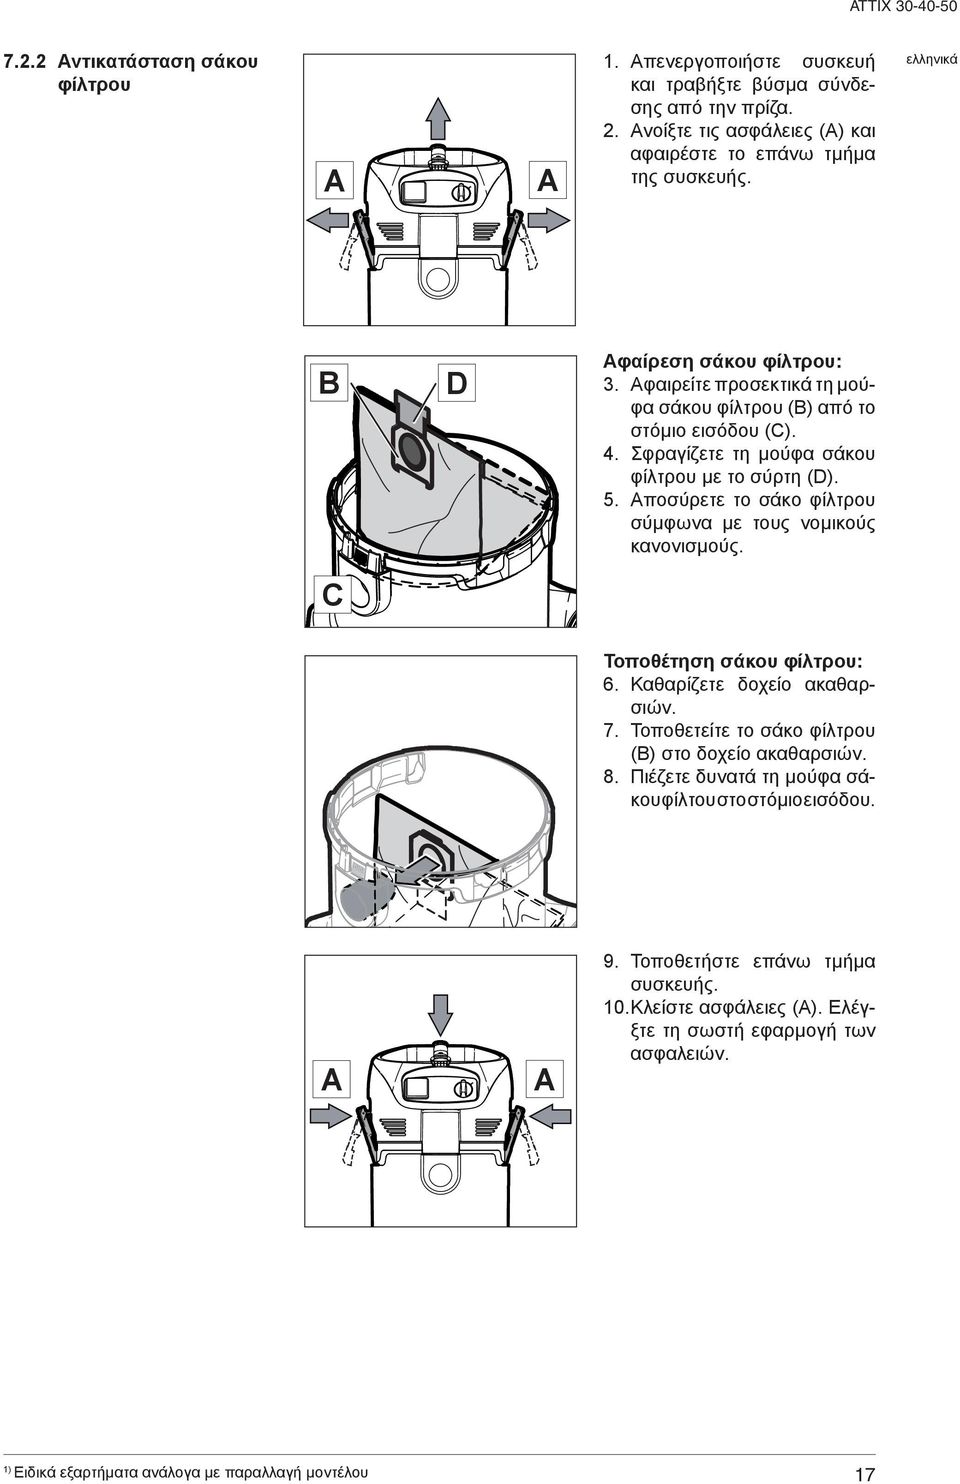 Αφαιρείτε προσεκτικά τη μούφα σάκου φίλτρου (B) από το στόμιο εισόδου (C). 4. Σφραγίζετε τη μούφα σάκου φίλτρου με το σύρτη (D). 5.